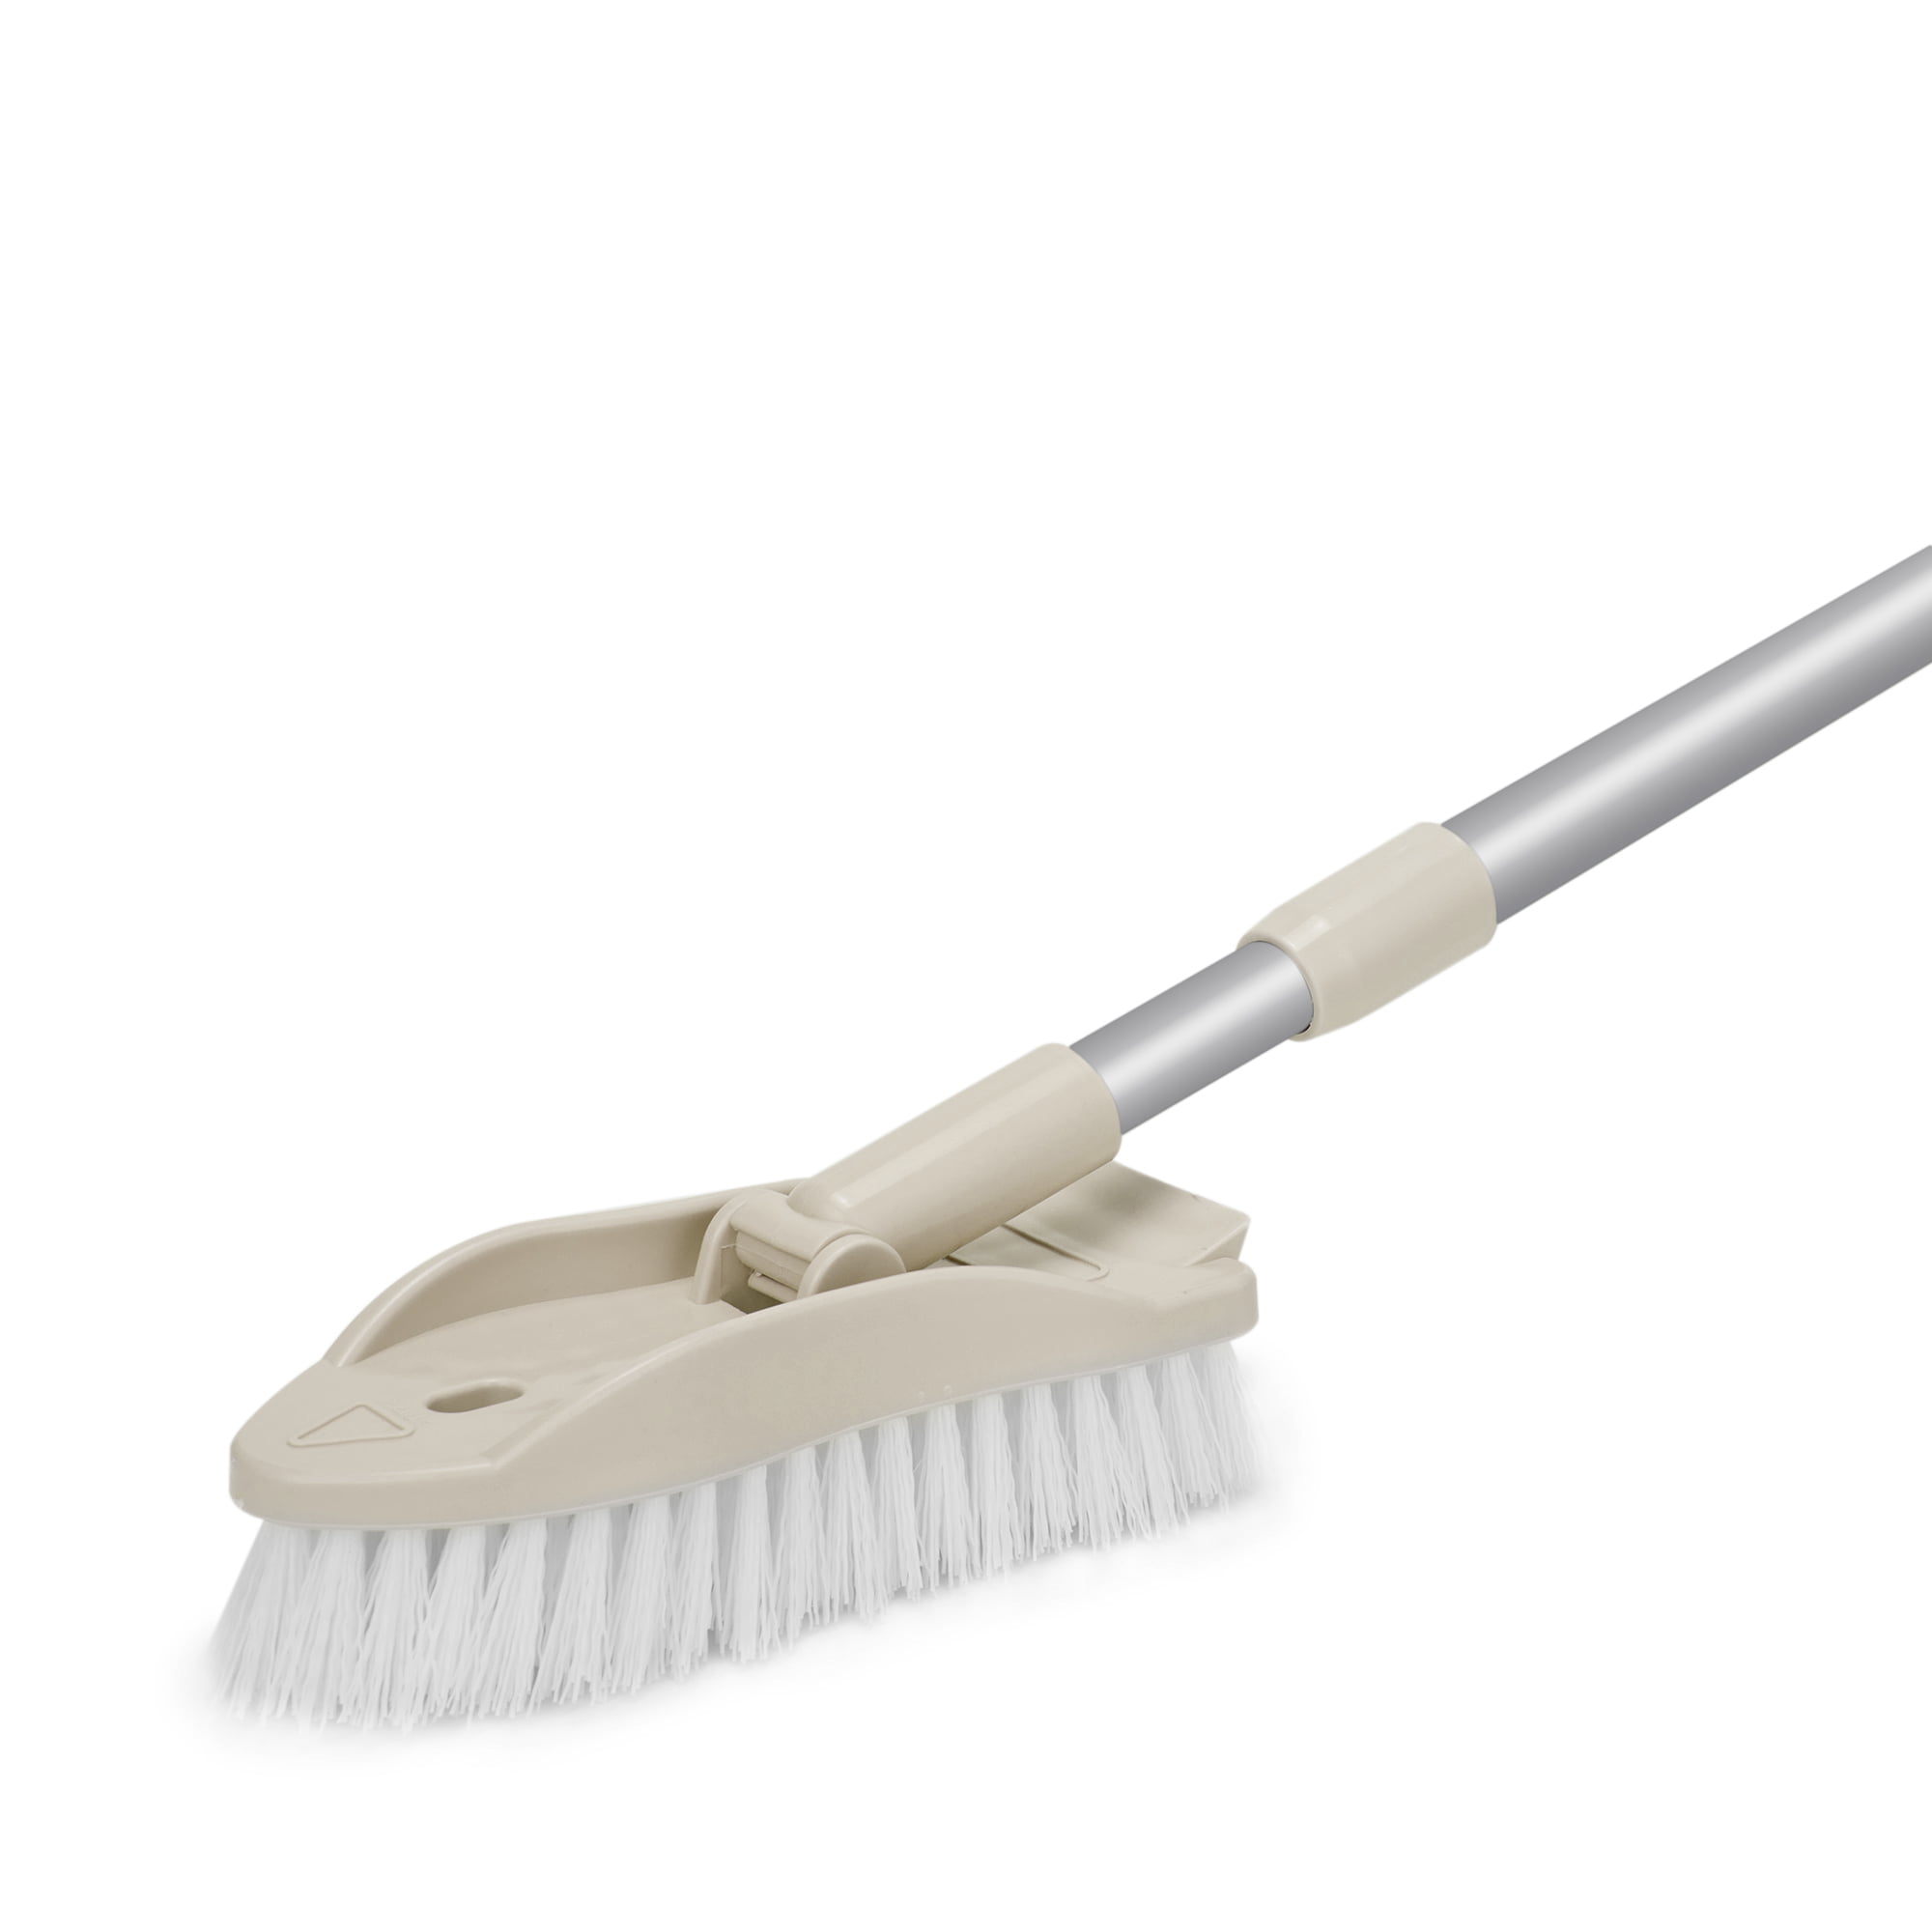 1 Pcs PP Scrub Brush with Handle Long Handle Soft Bristle Cleaning Brush  Cleaning Brush Bookcase – de beste varene i nettbutikken Joom Geek